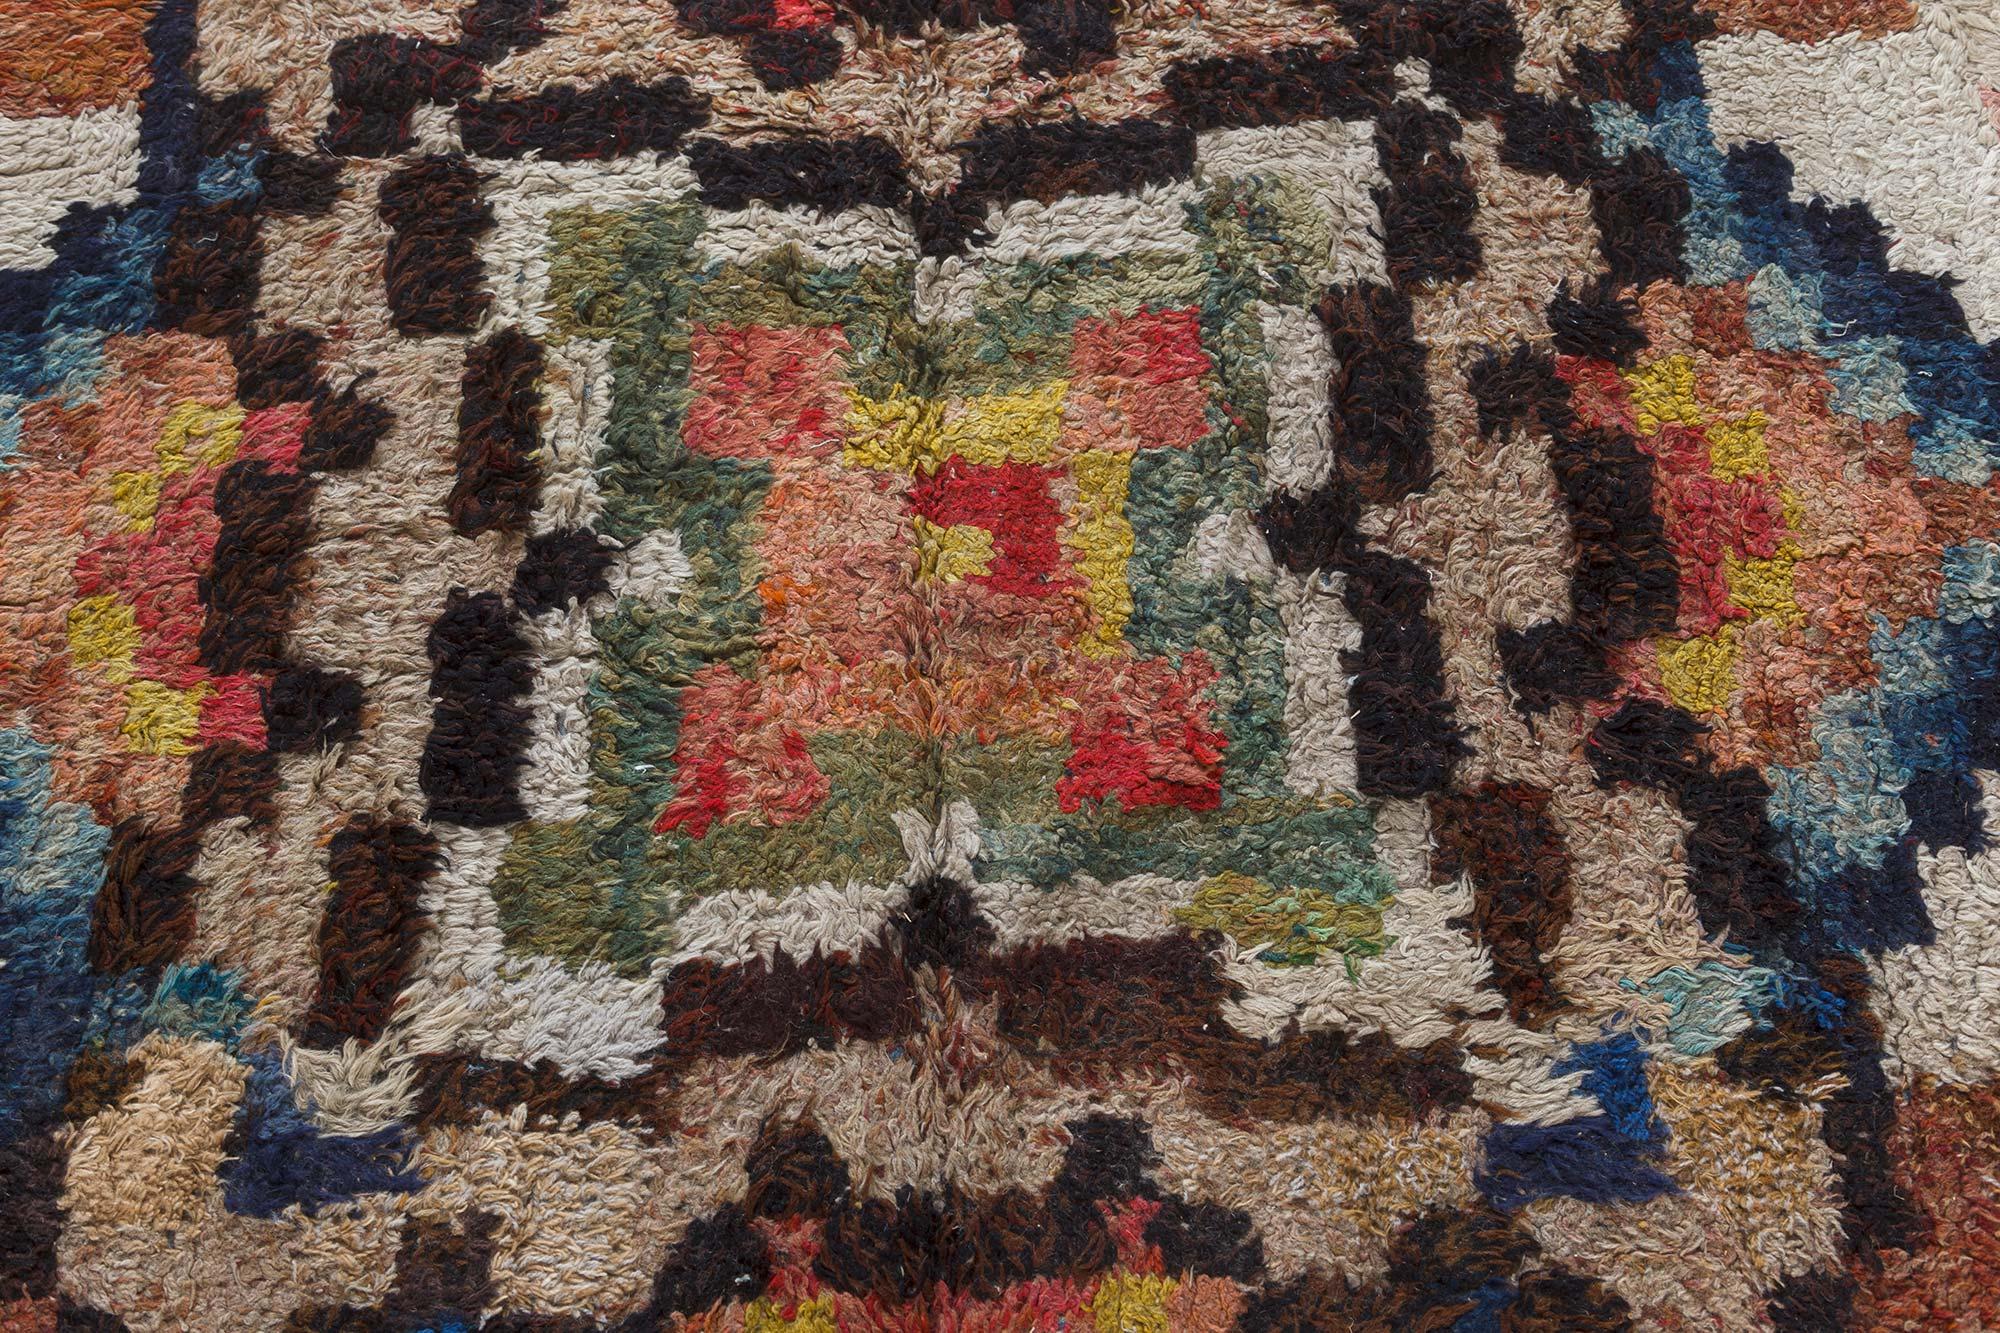 Vintage French Botanic Handmade Wool Rug
Size: 8'8